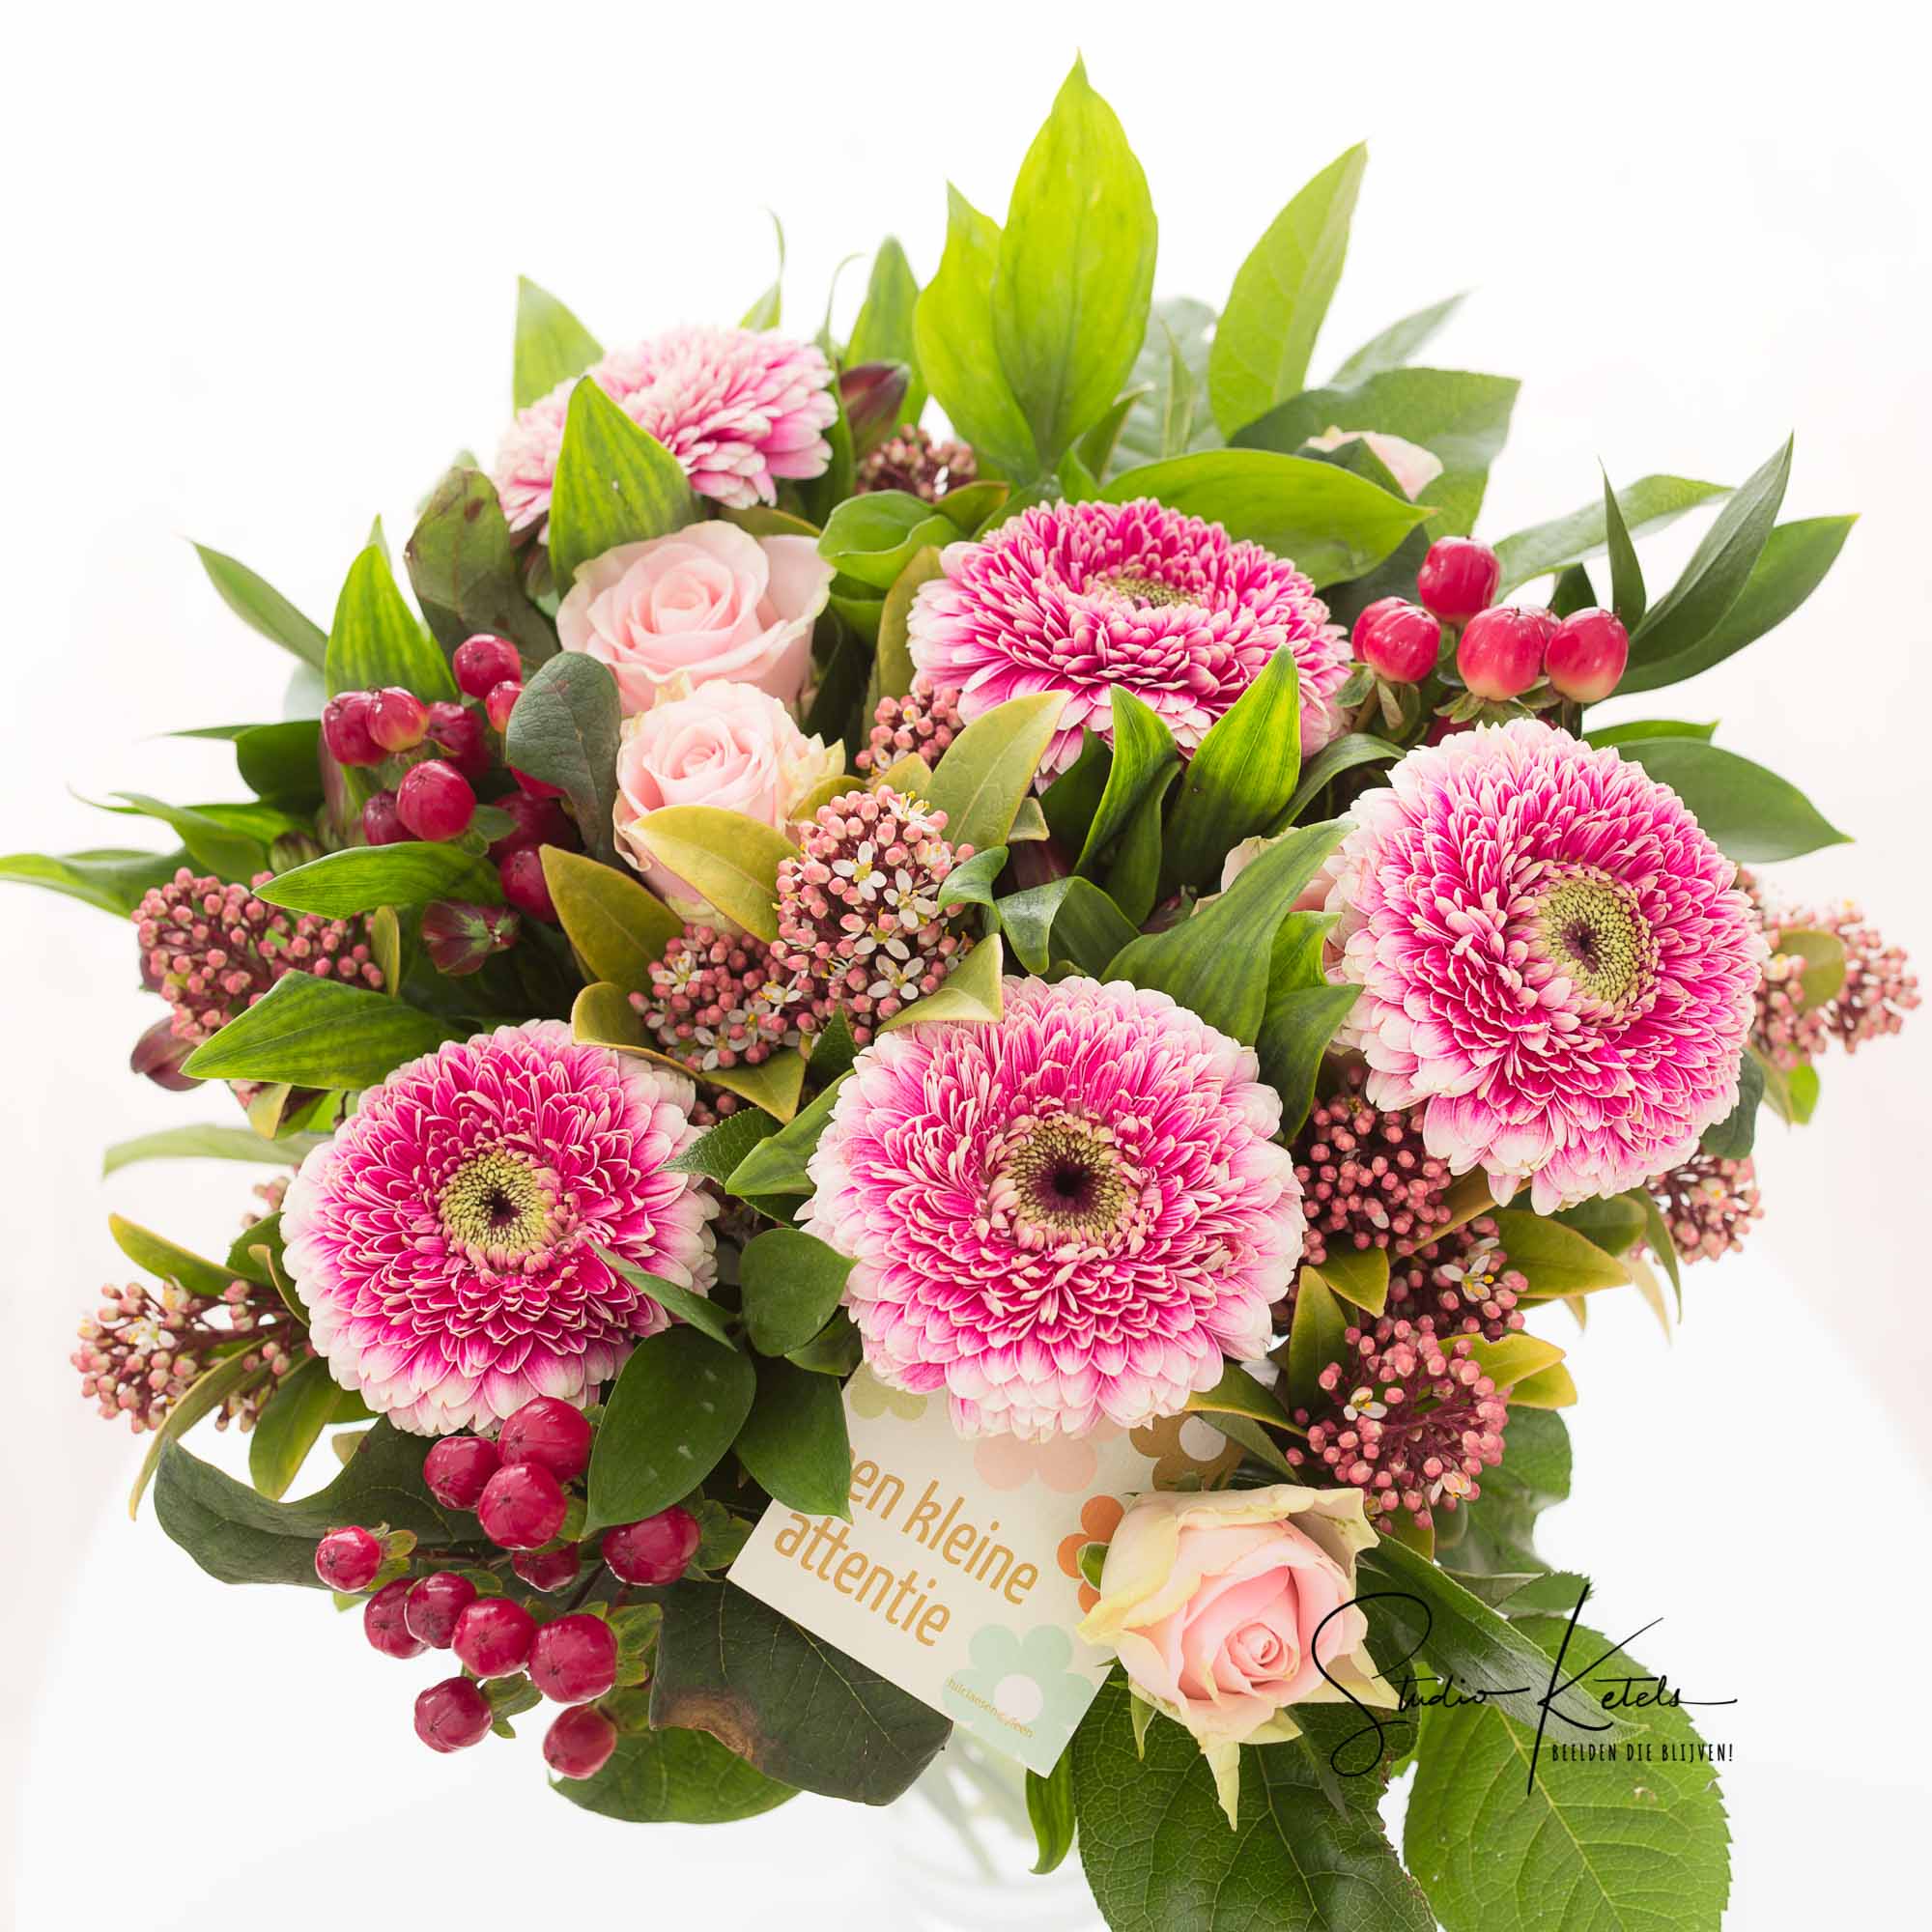 Productfoto van een kleurrijk boeket met roze en paarse bloemen. Productfotografie door Studio Ketels